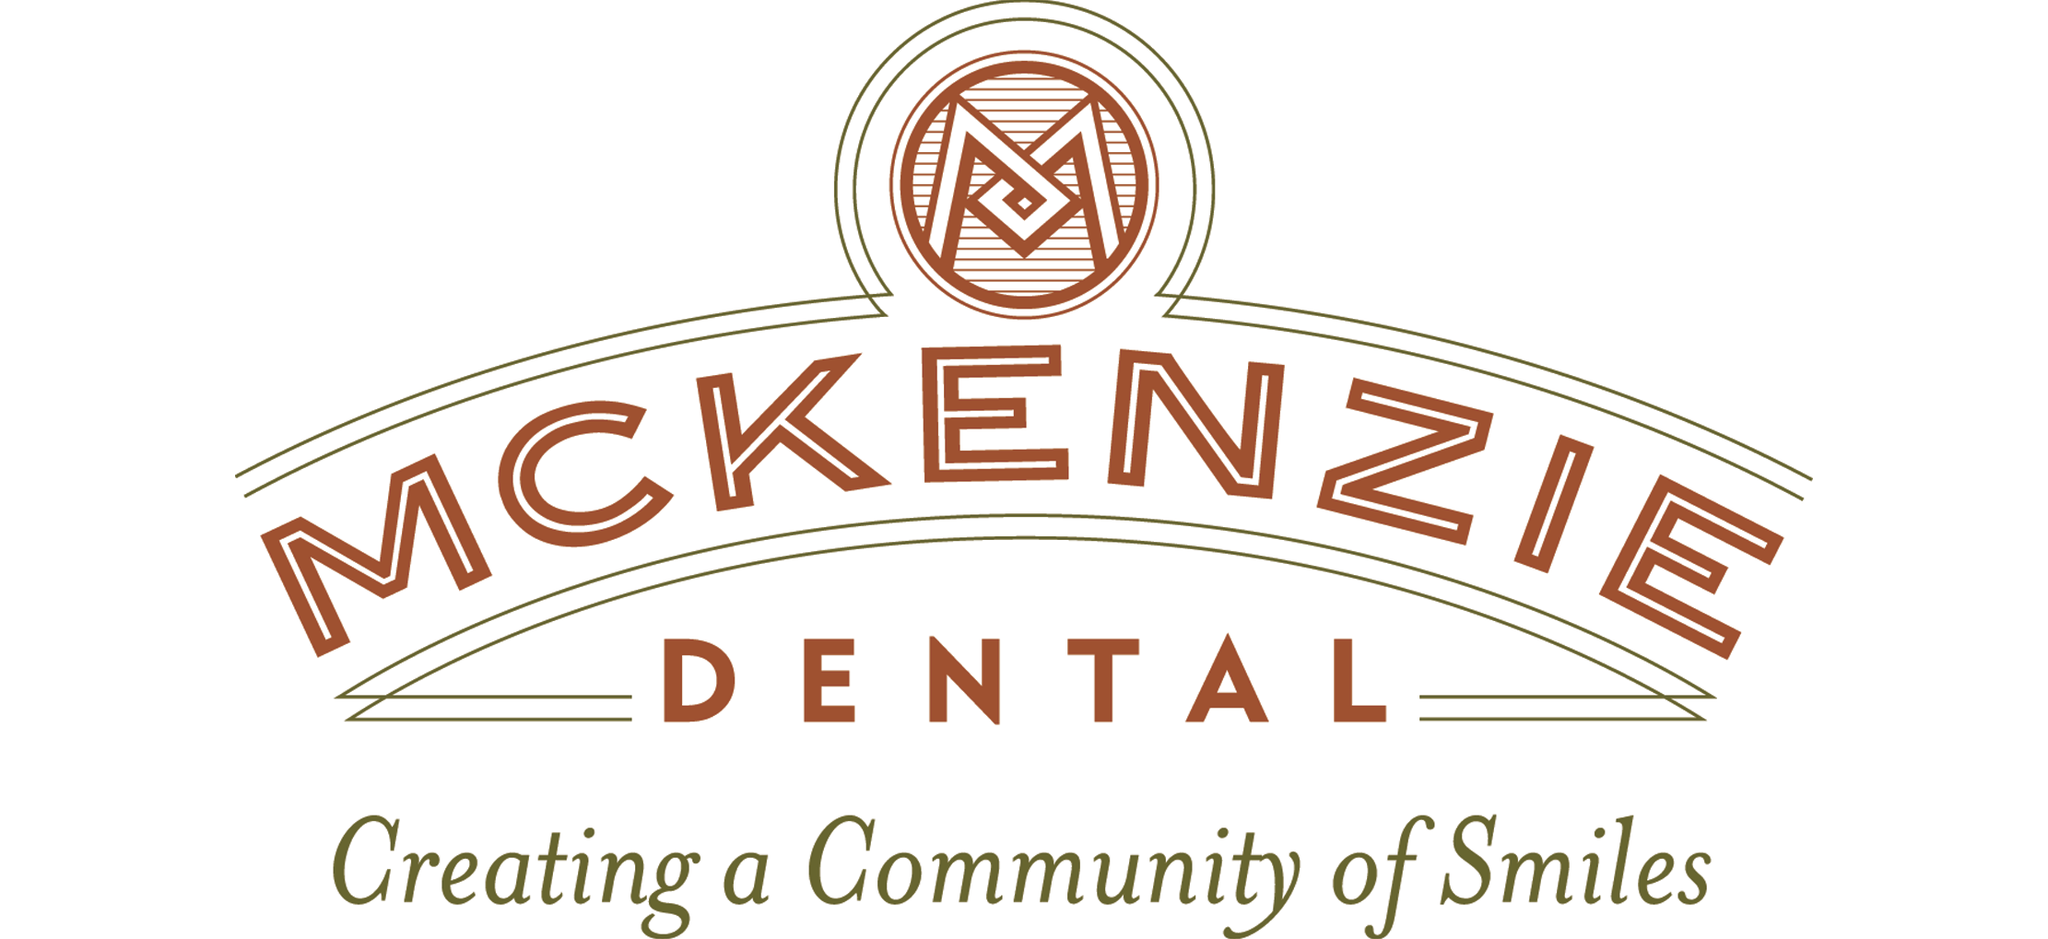 McKenzie Dental